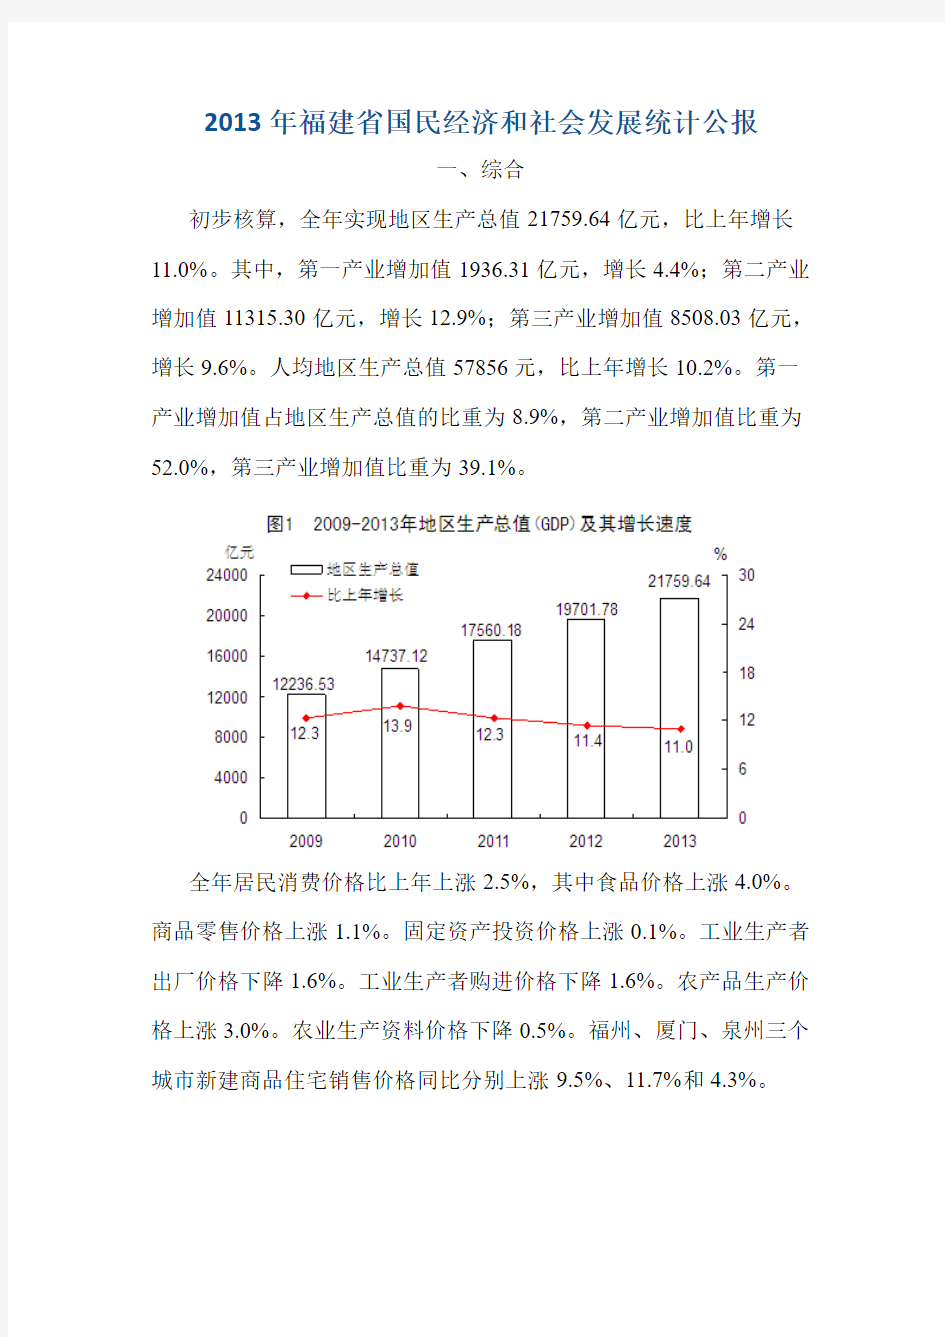 2013年福建省国民经济和社会发展统计公报